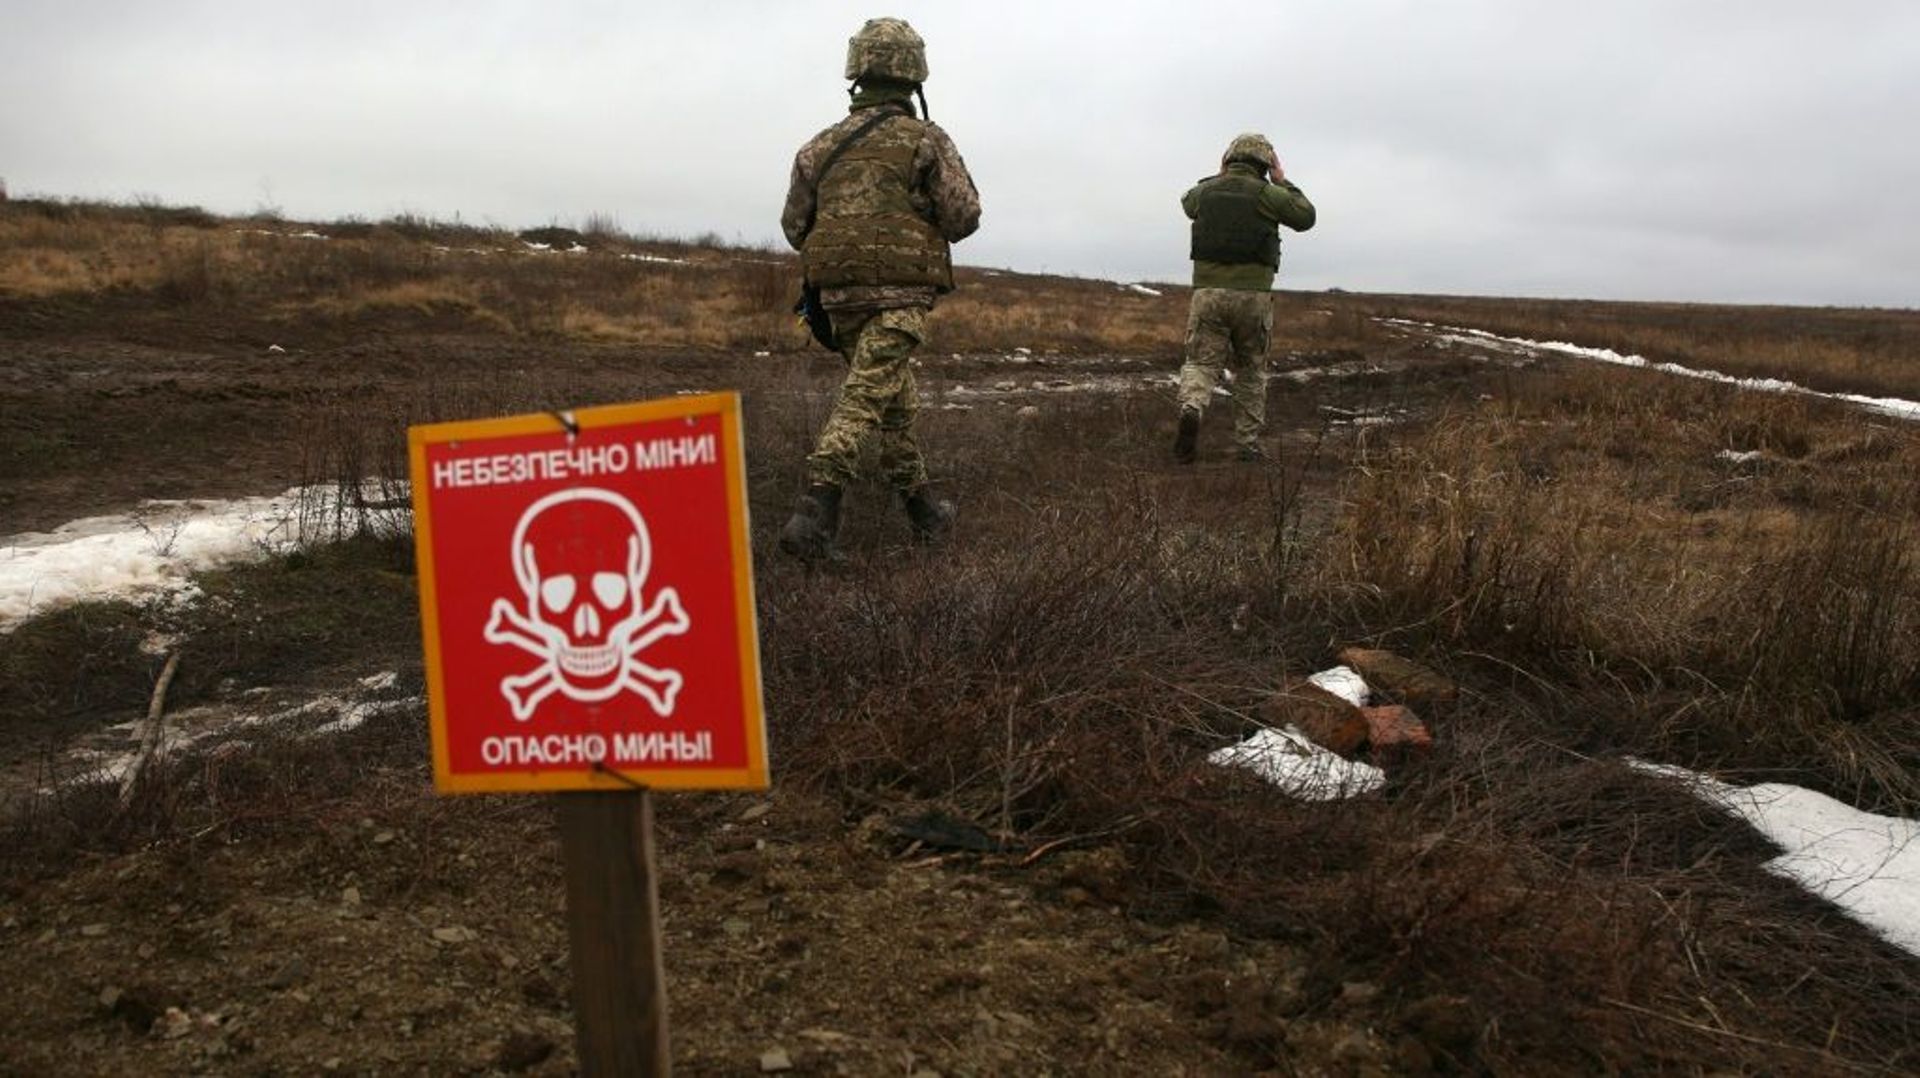 Des militaires ukrainiens patrouillent près d'un champ de mines sur la ligne de front, le 11 janvier 2021 à Luganske, dans la région de Donetsk